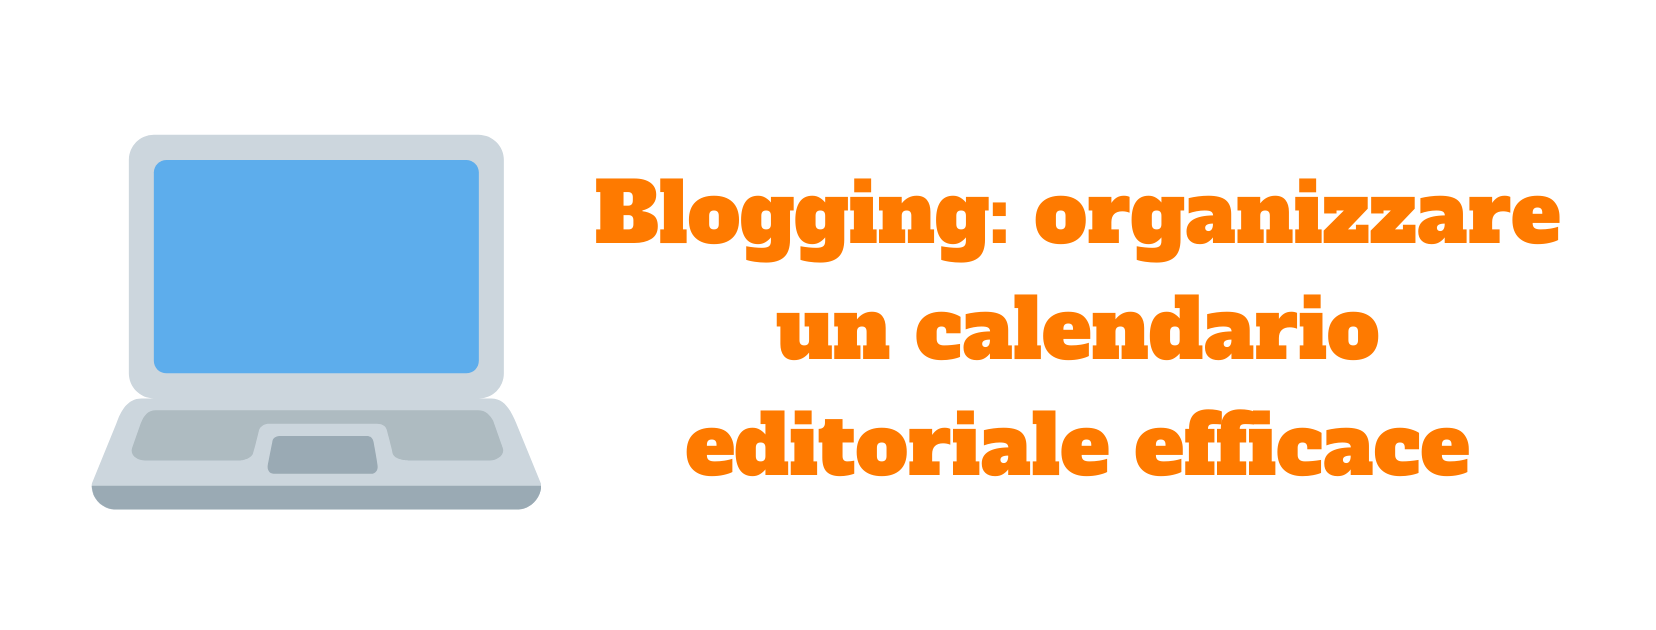 Blogging: organizzare un calendario editoriale efficace